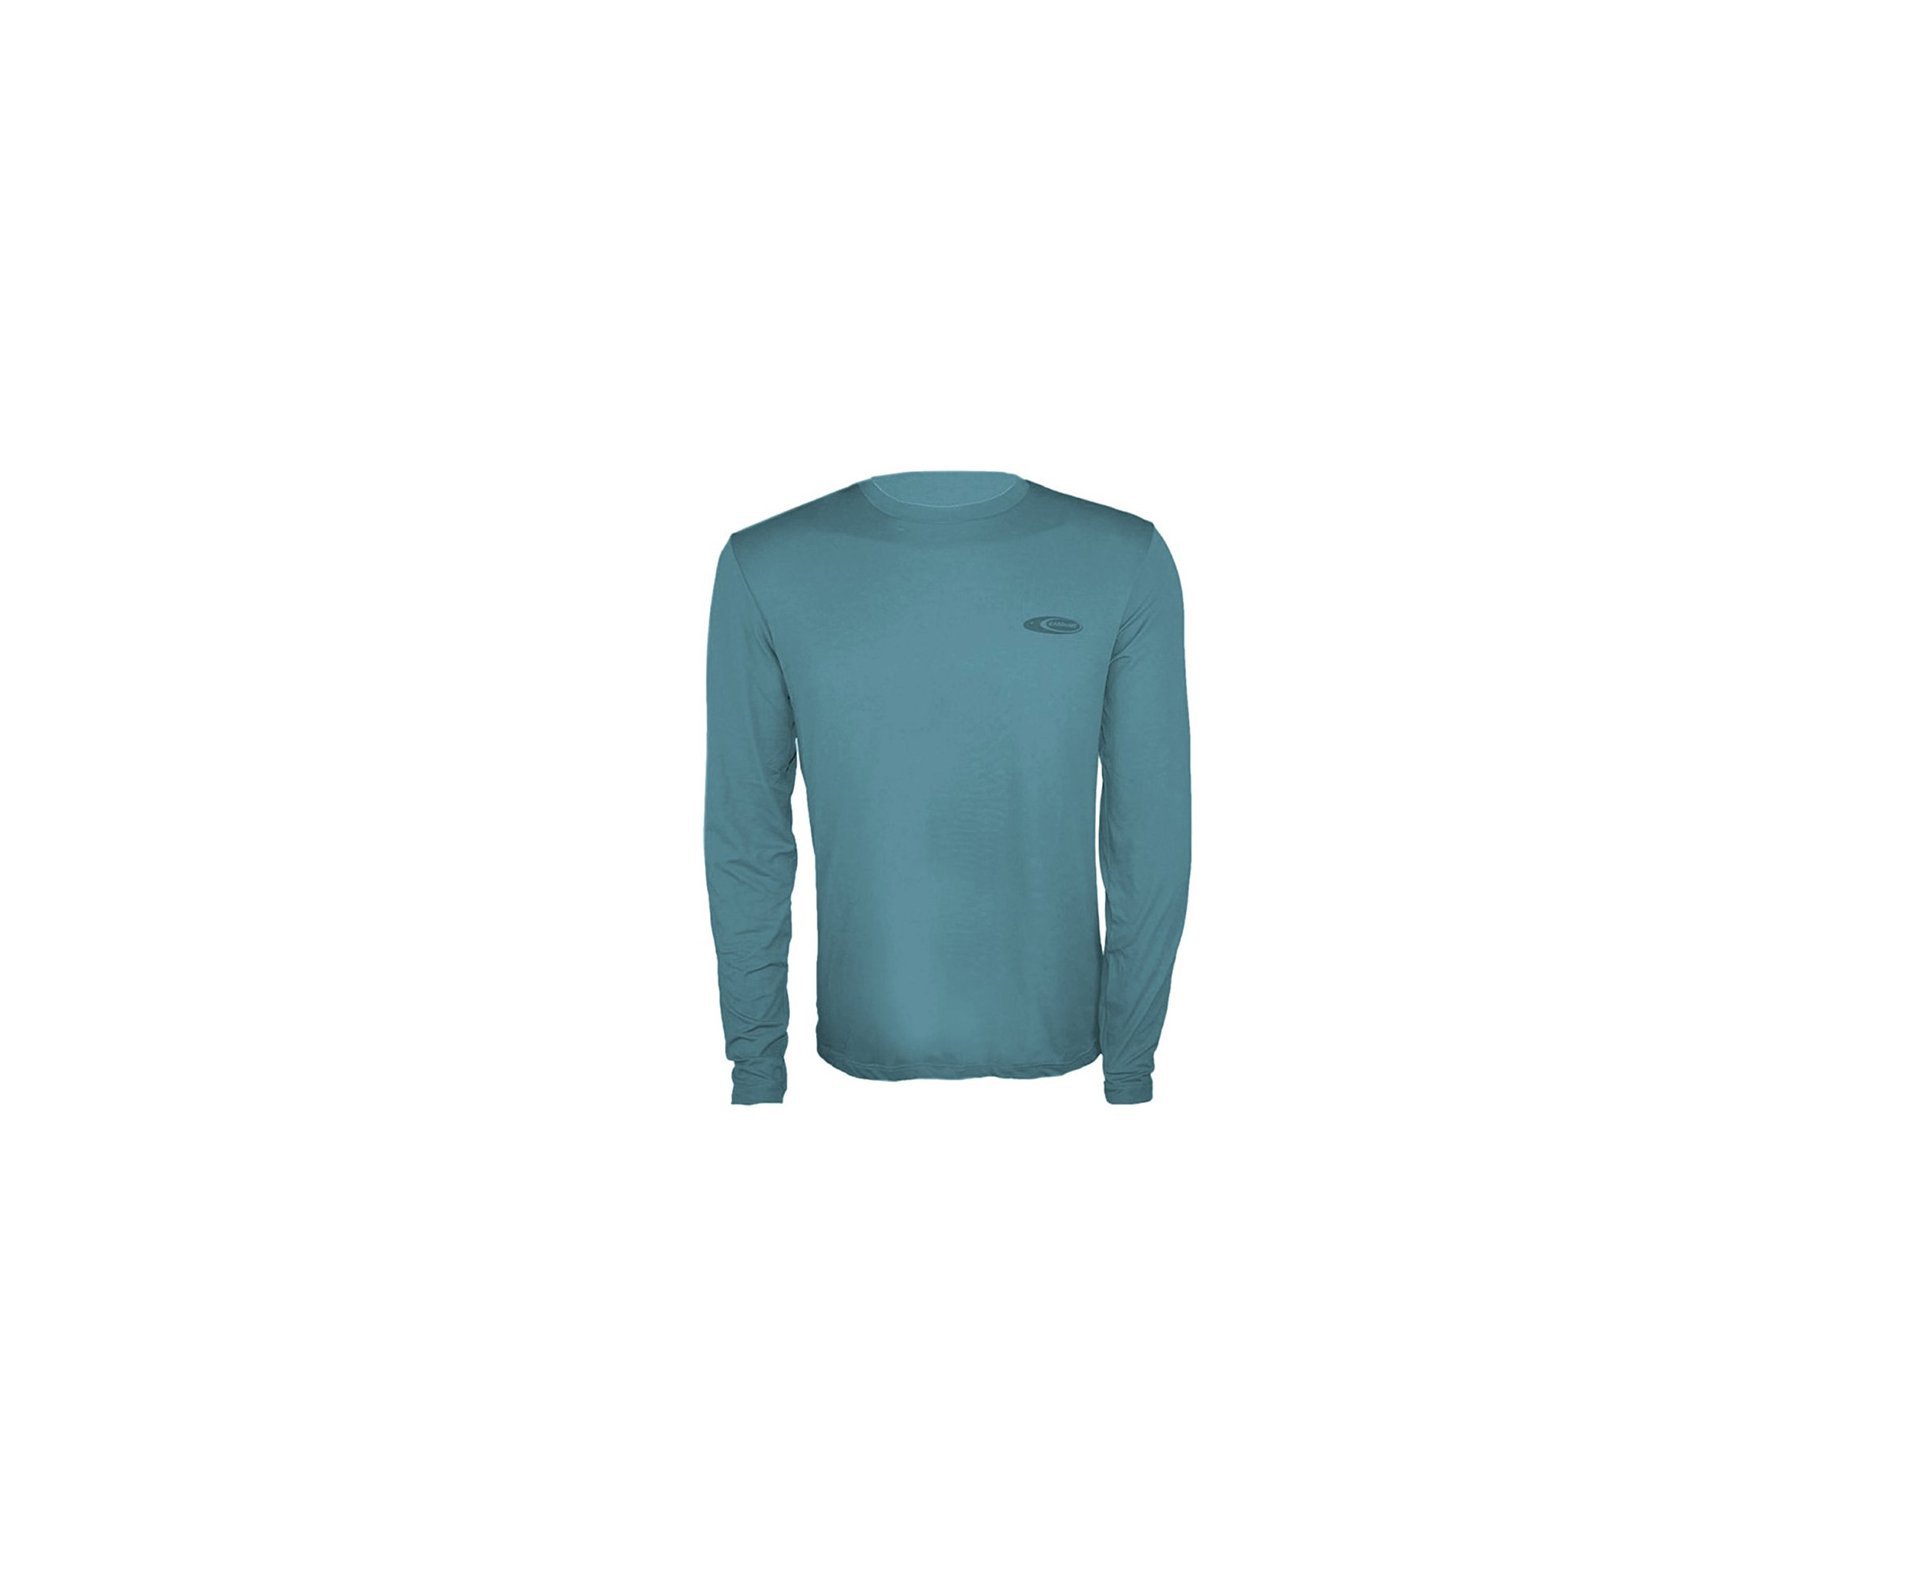 Camiseta Softline Verde Aquamarine - Proteção Uva/uvb 50+ Fps - Cardume - P